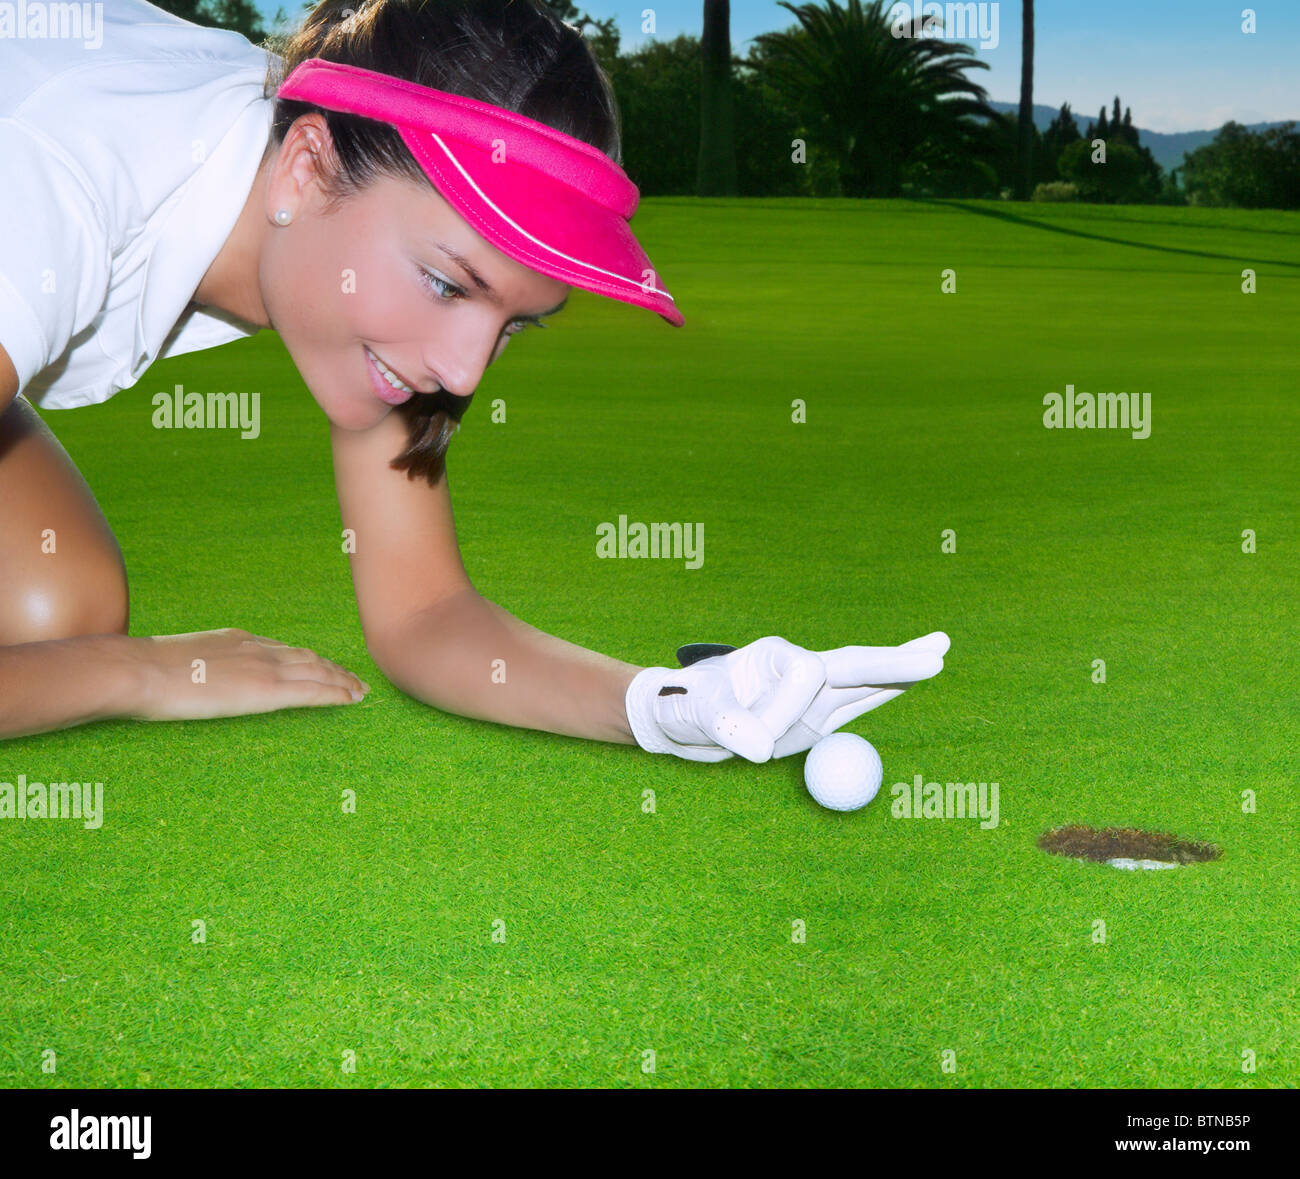 Grün Loch Kurs Frau Humor flicking hand eine Kugel im Inneren kurz Golf putt Stockfoto